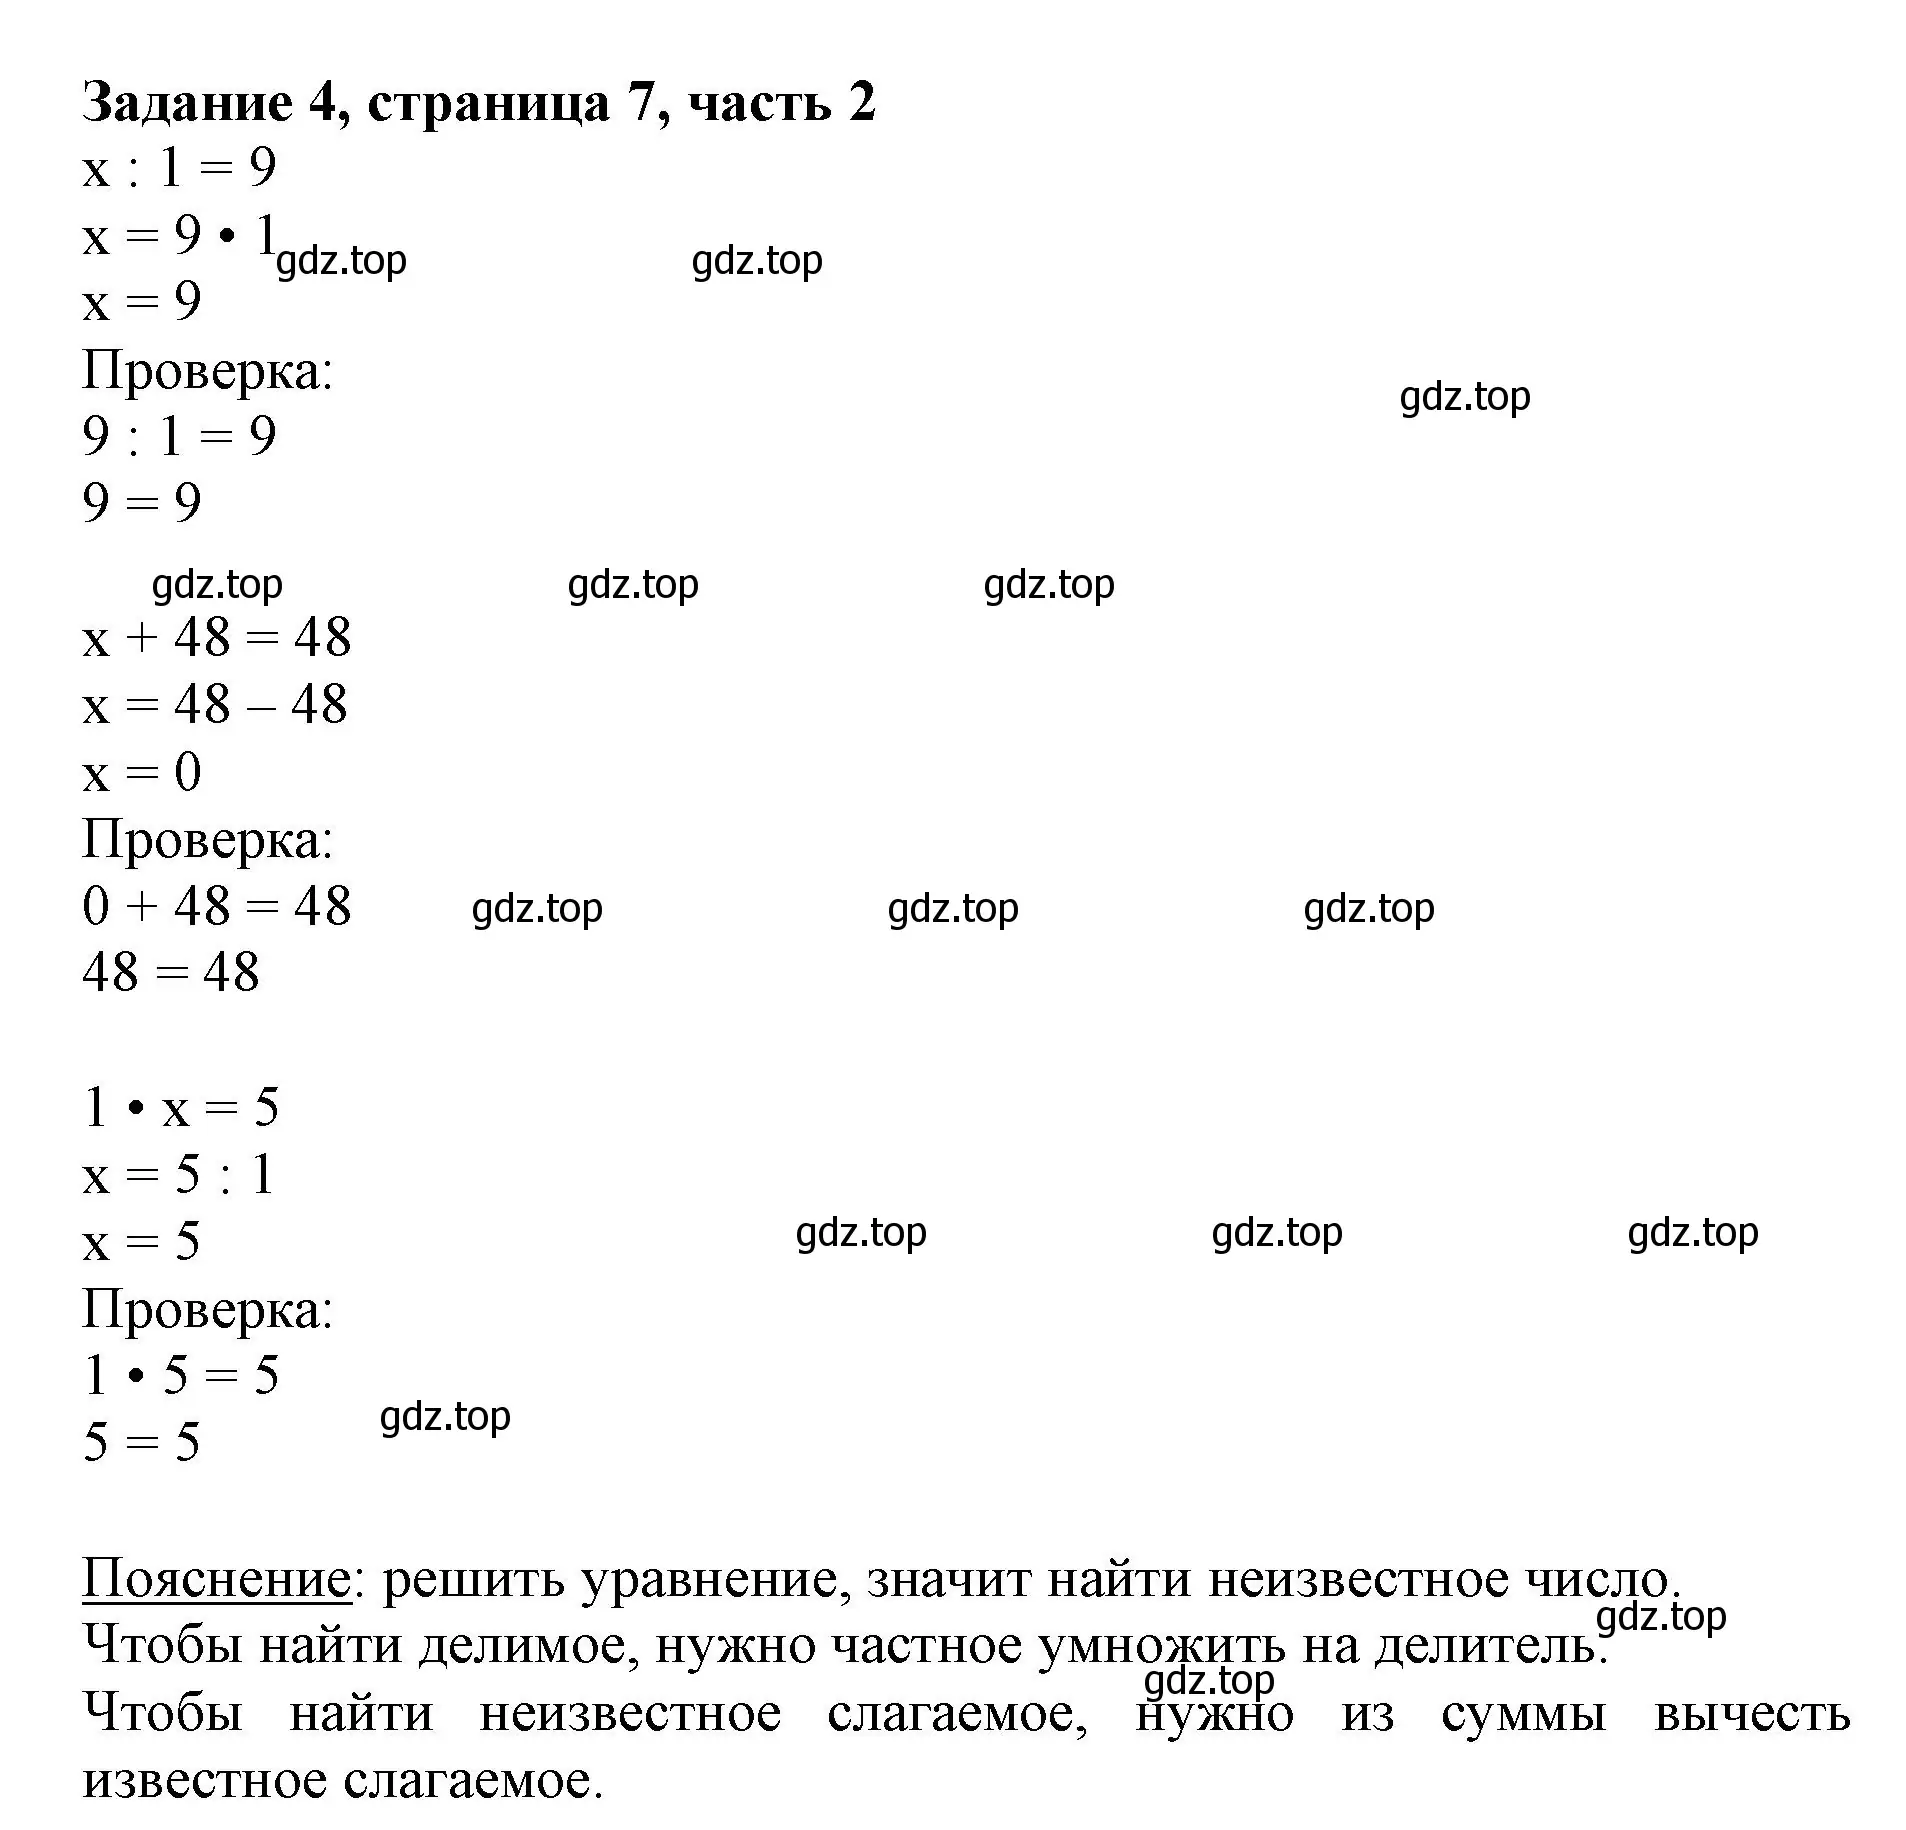 Решение номер 4 (страница 7) гдз по математике 3 класс Моро, Бантова, учебник 2 часть